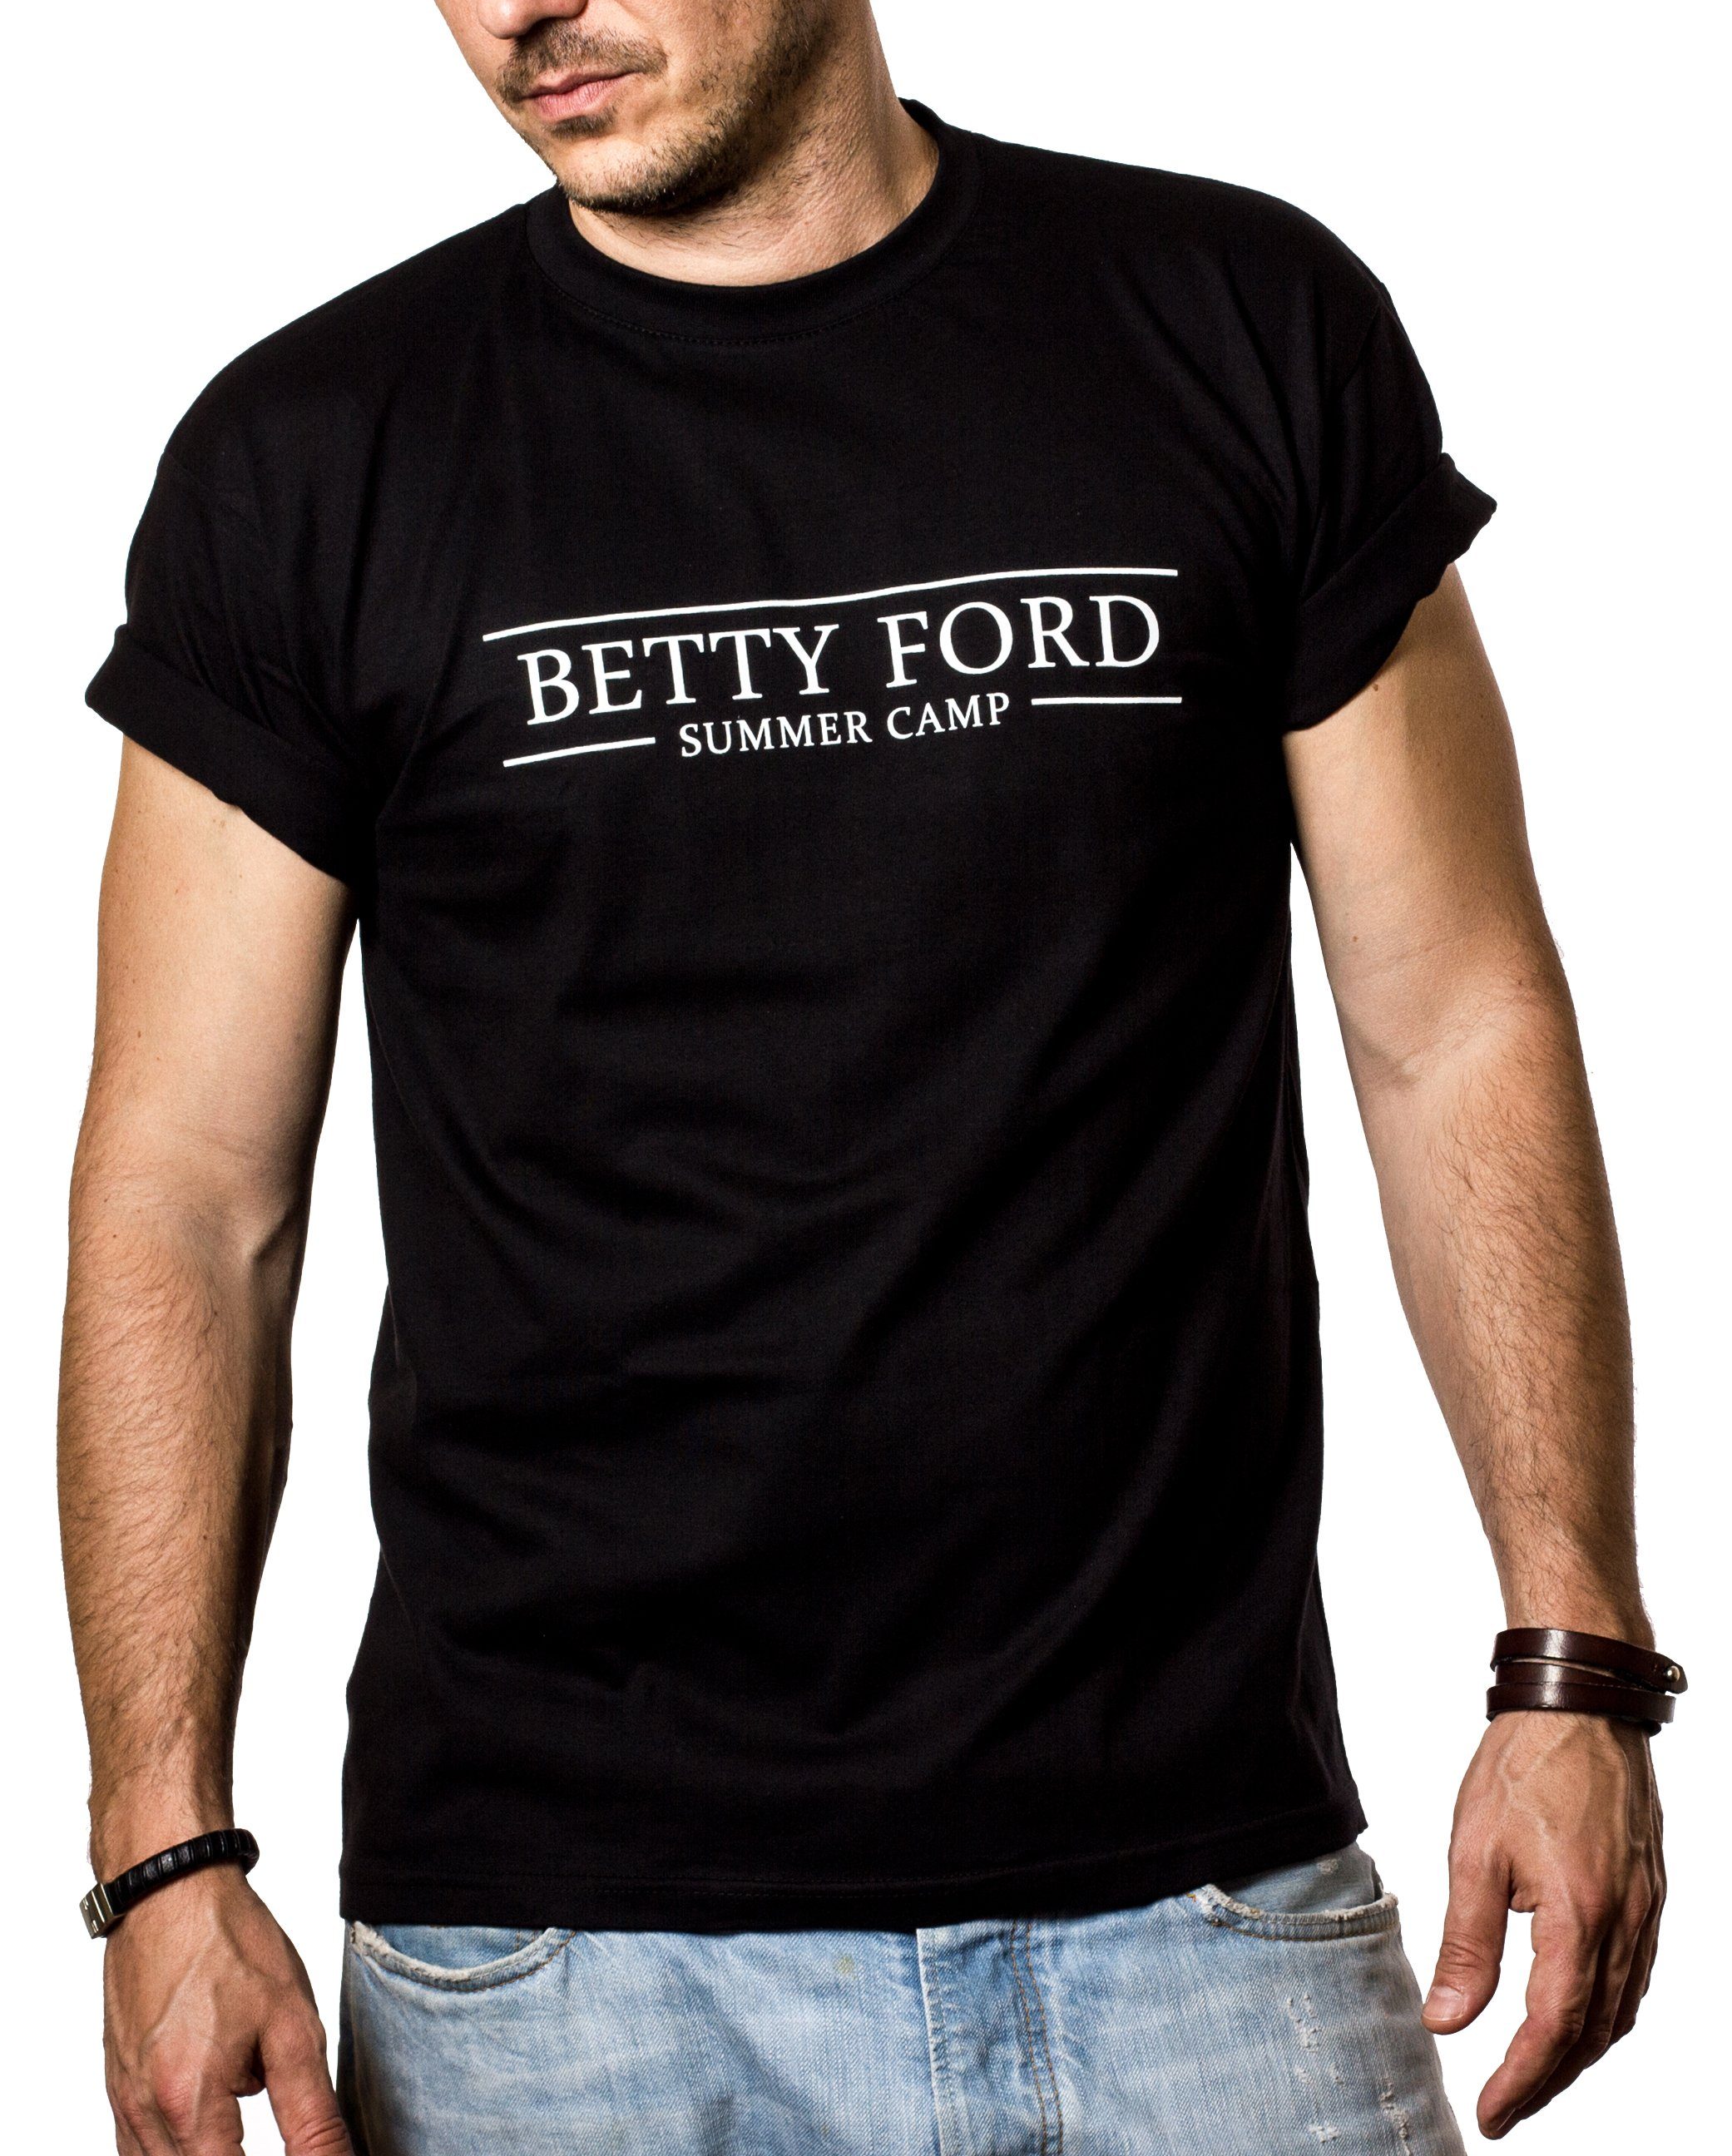 MAKAYA Print-Shirt Sprüche Lustig Betty Ford Summer Camp Herren/Männer Grill Party Outfit mit Druck